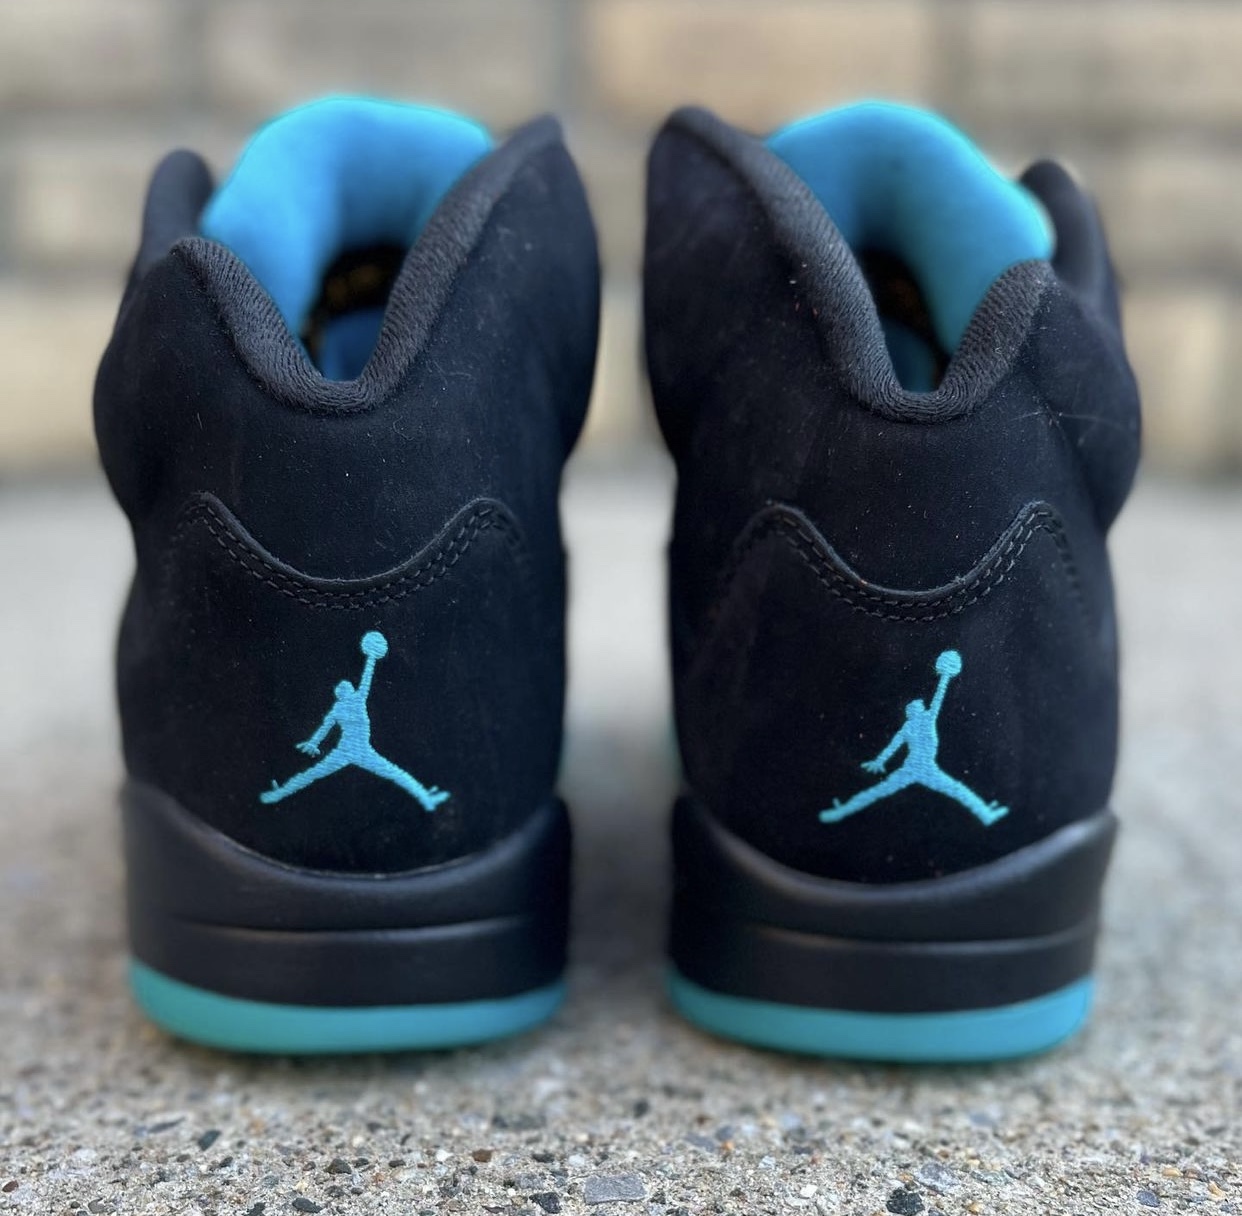 Aqua' Air Jordan 5 Release Gets Moved Up